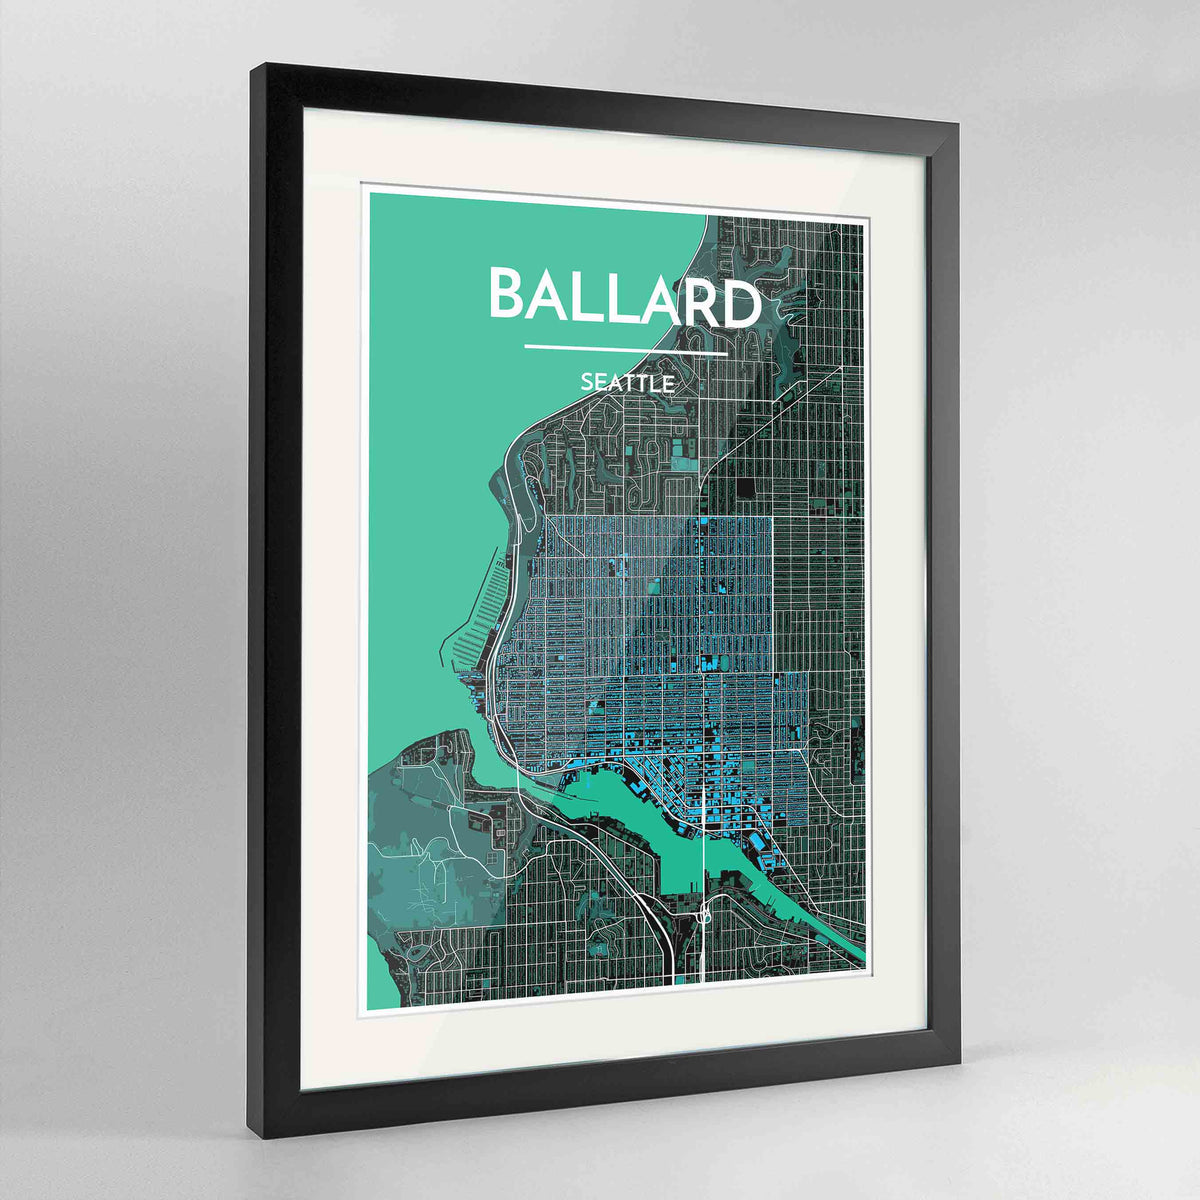 Framed Seattle Ballard Neighbourhood Map Art Print 24x36&quot; Contemporary Black frame Point Two Design Group